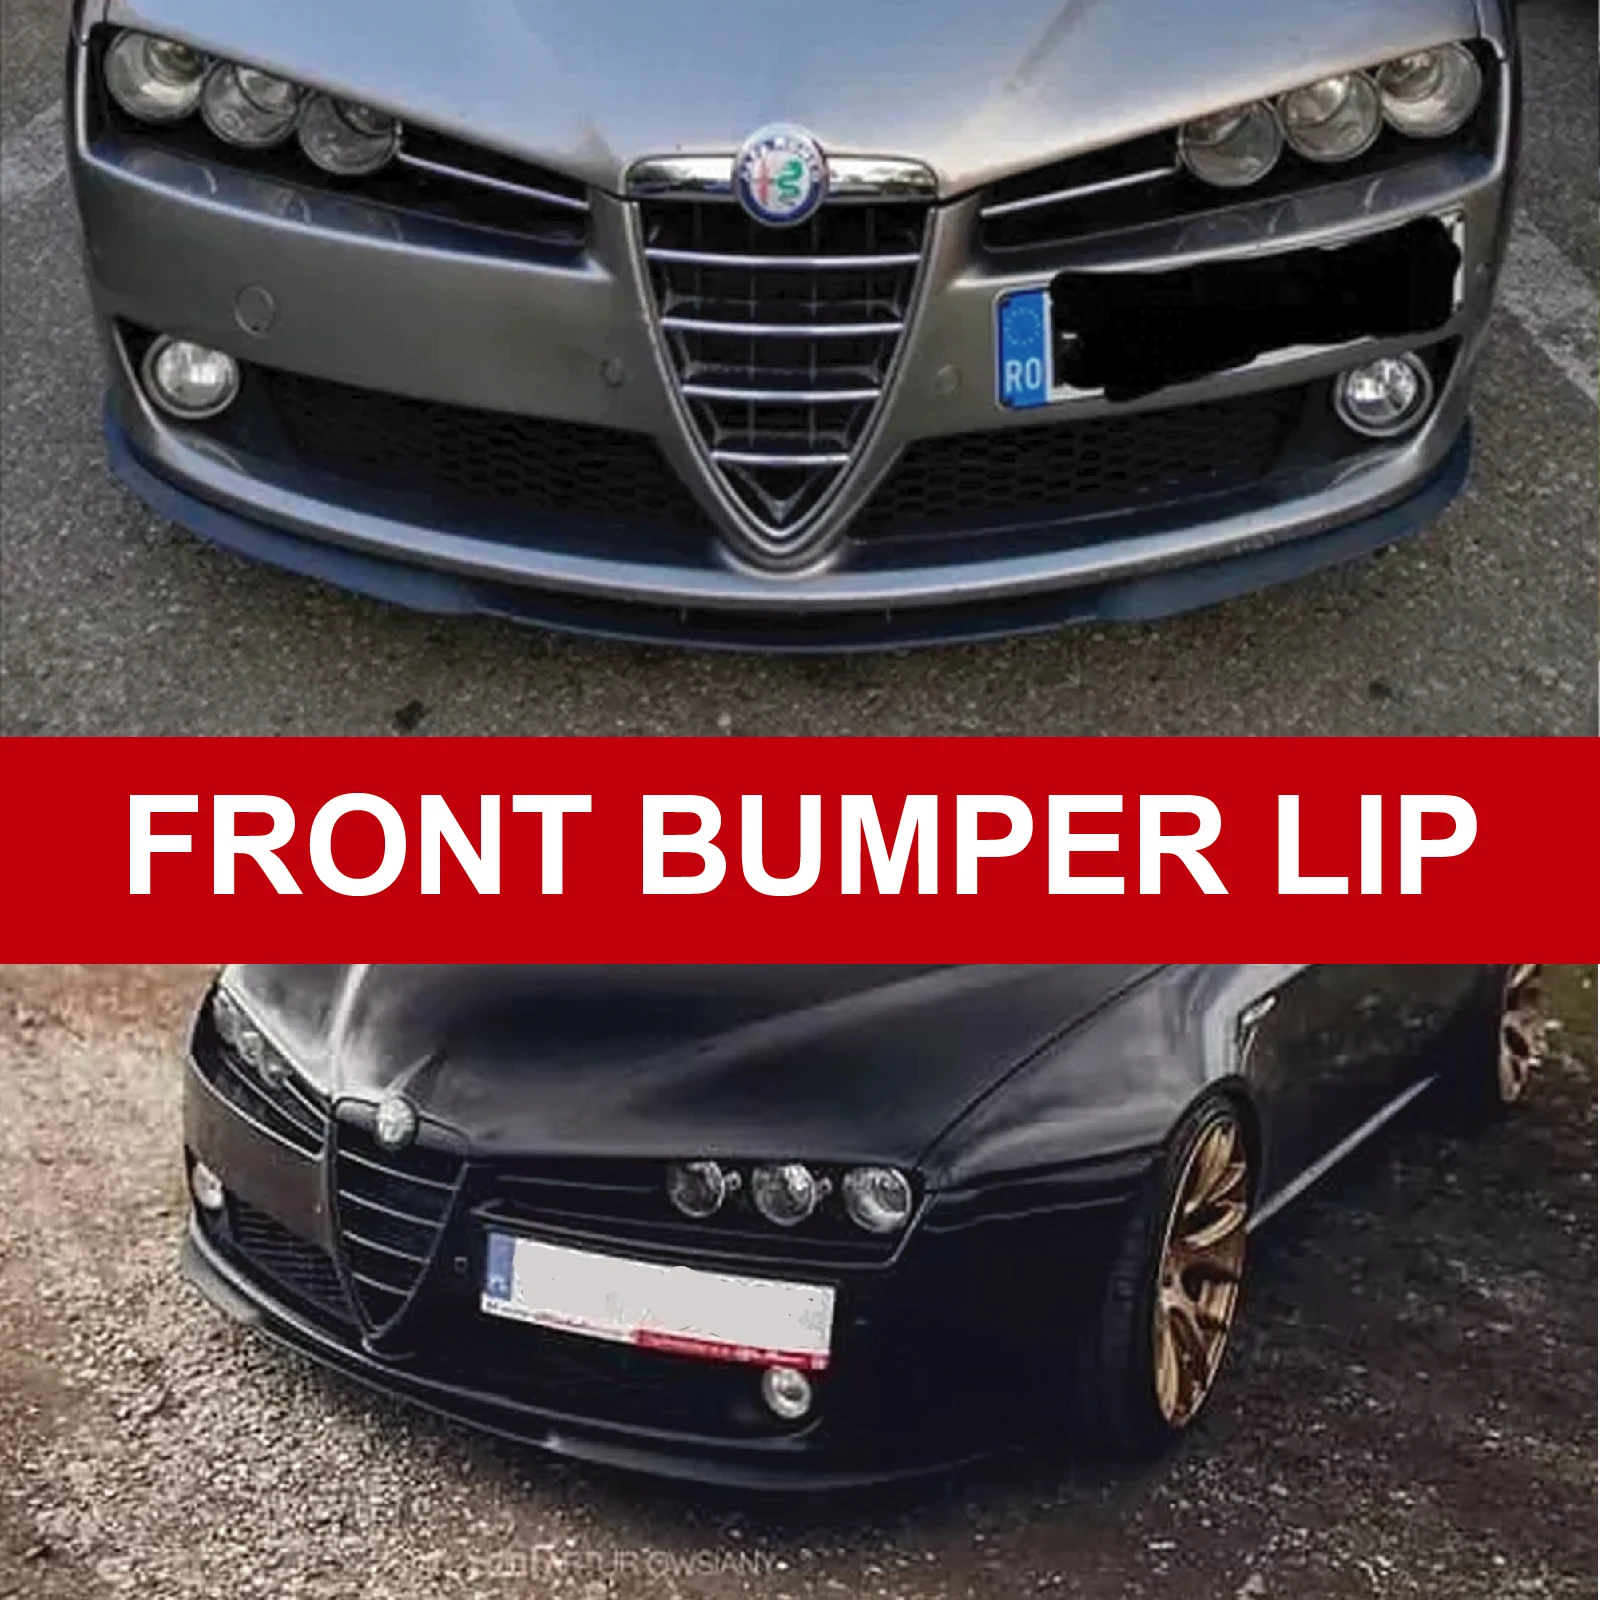 Parachoques delantero Universal para coche, difusor de 3 piezas, Spoiler de salto inferior negro, accesorios para Alfa Romeo 159, CUPRA R